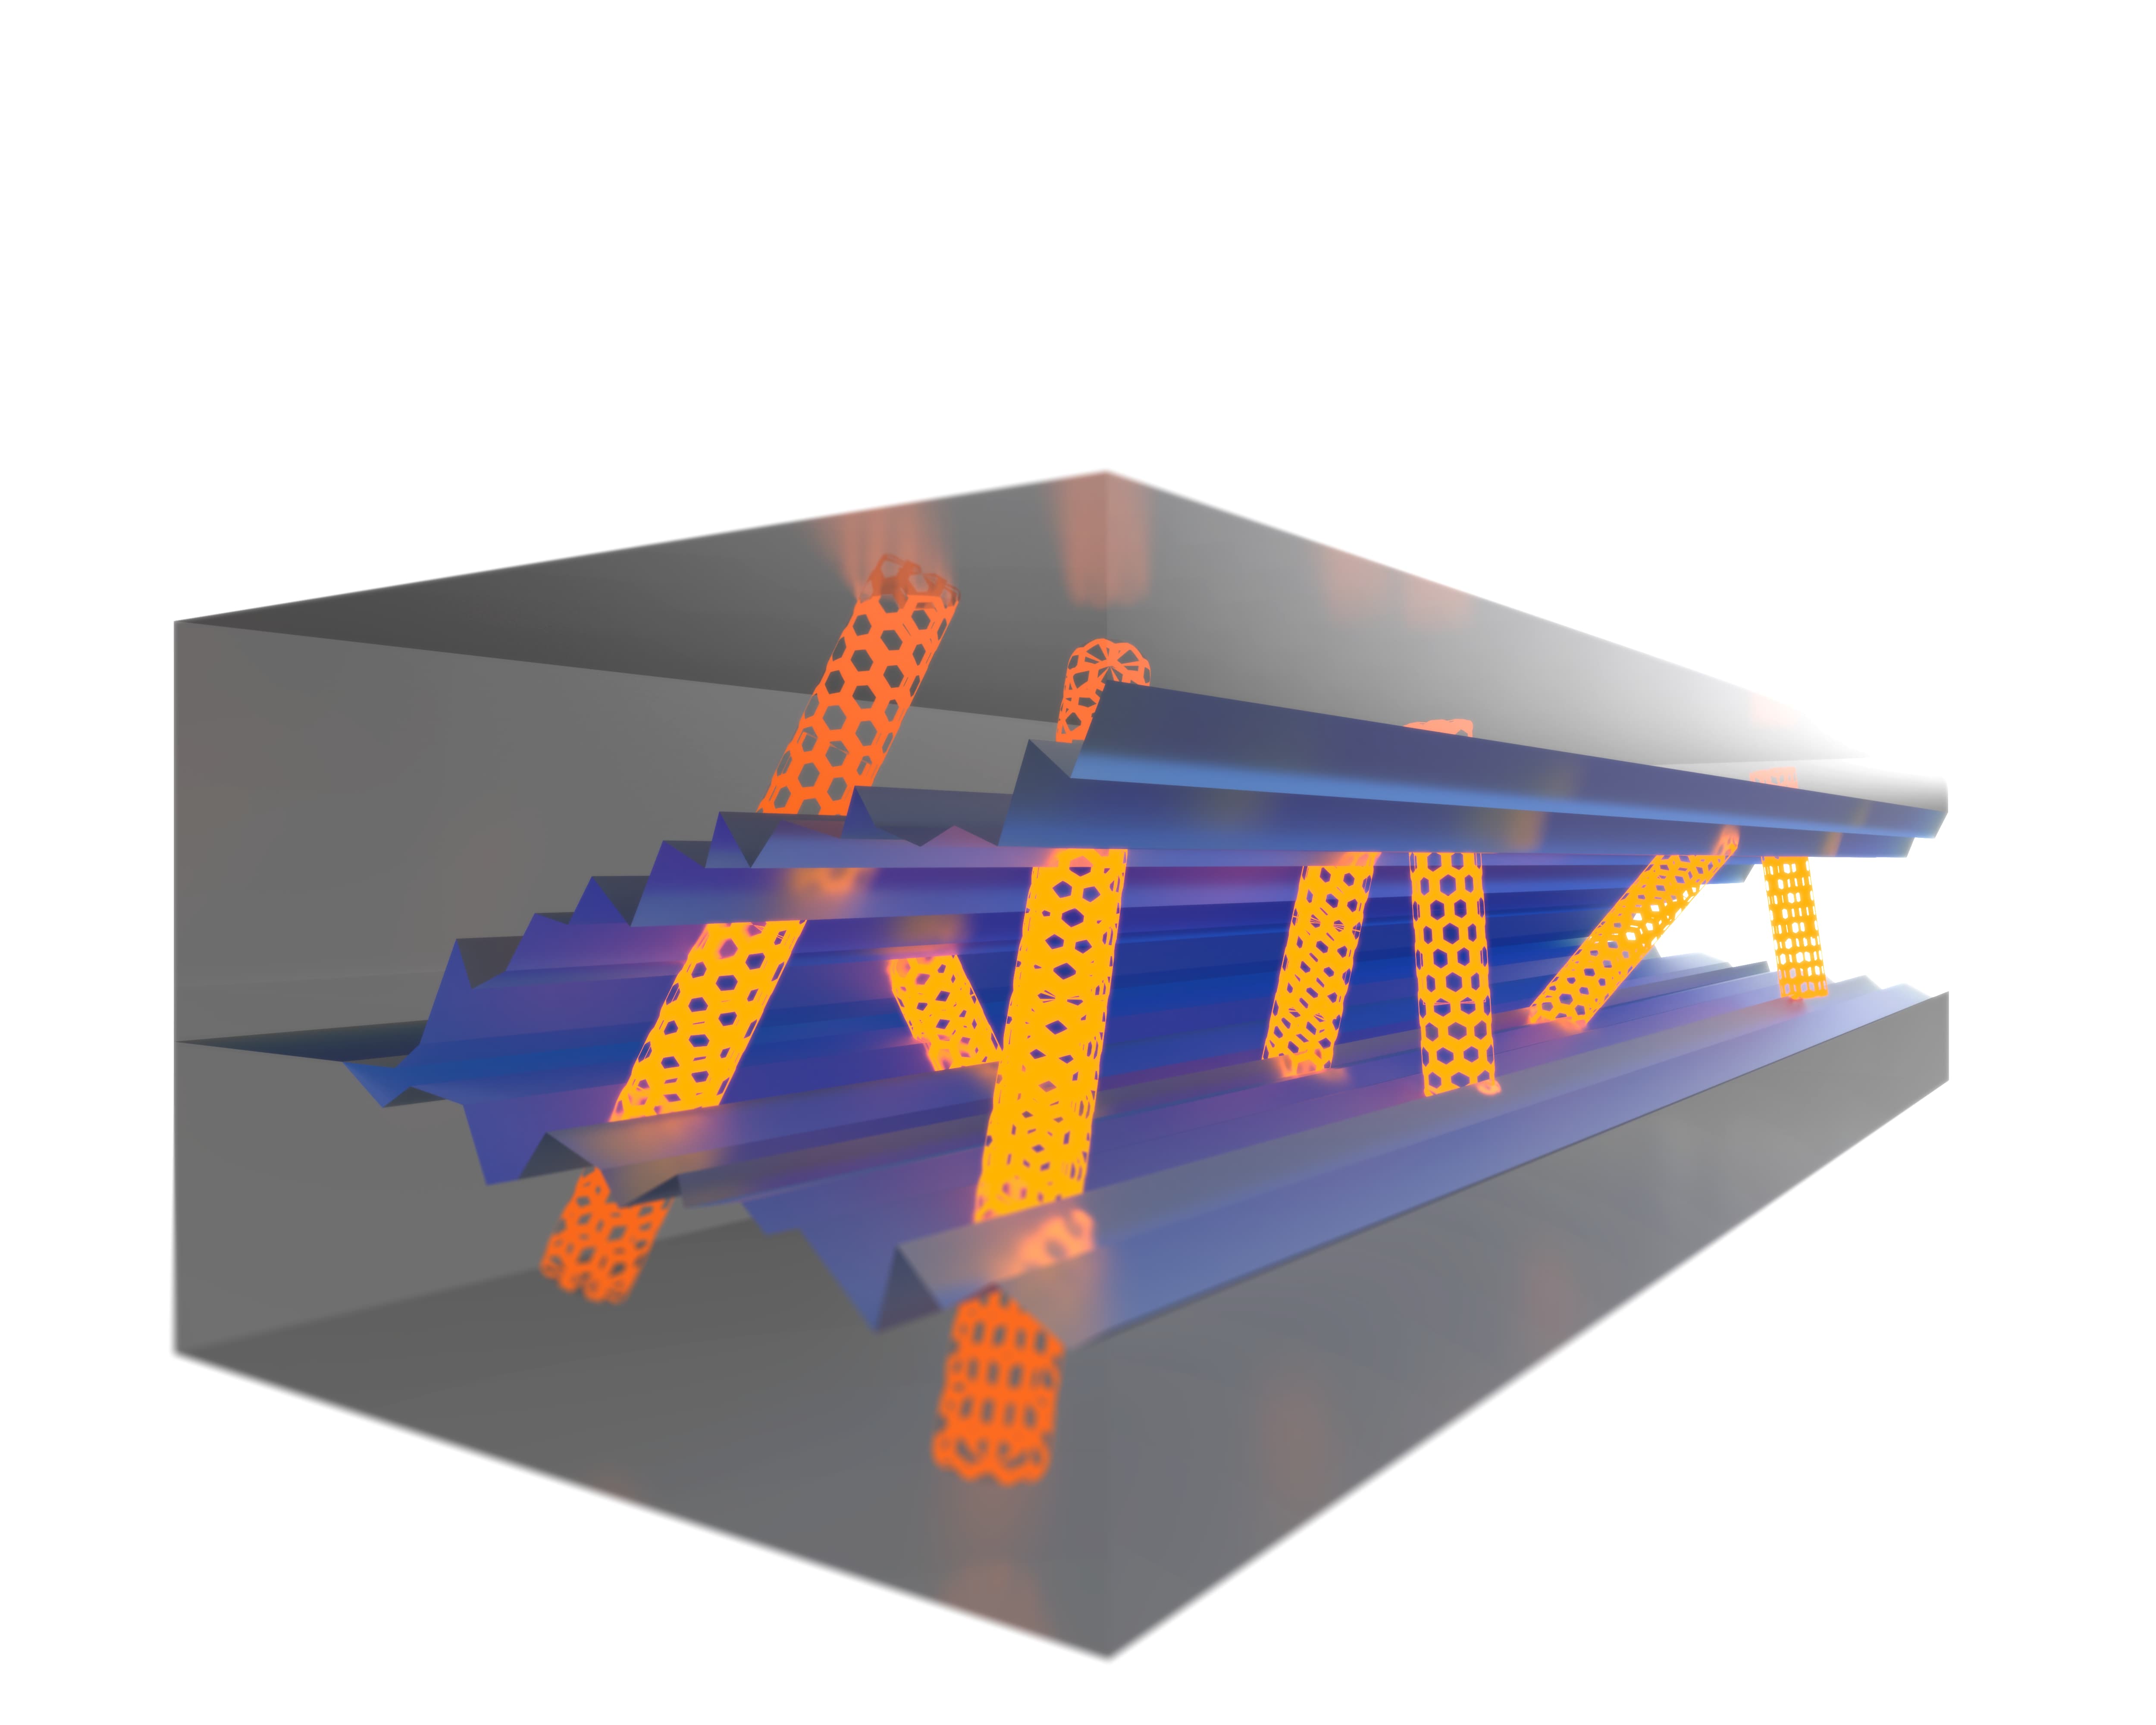 Die Nanotubes verstärken die Matrix und verhindern ein plötzliches Versagen des Bauteils